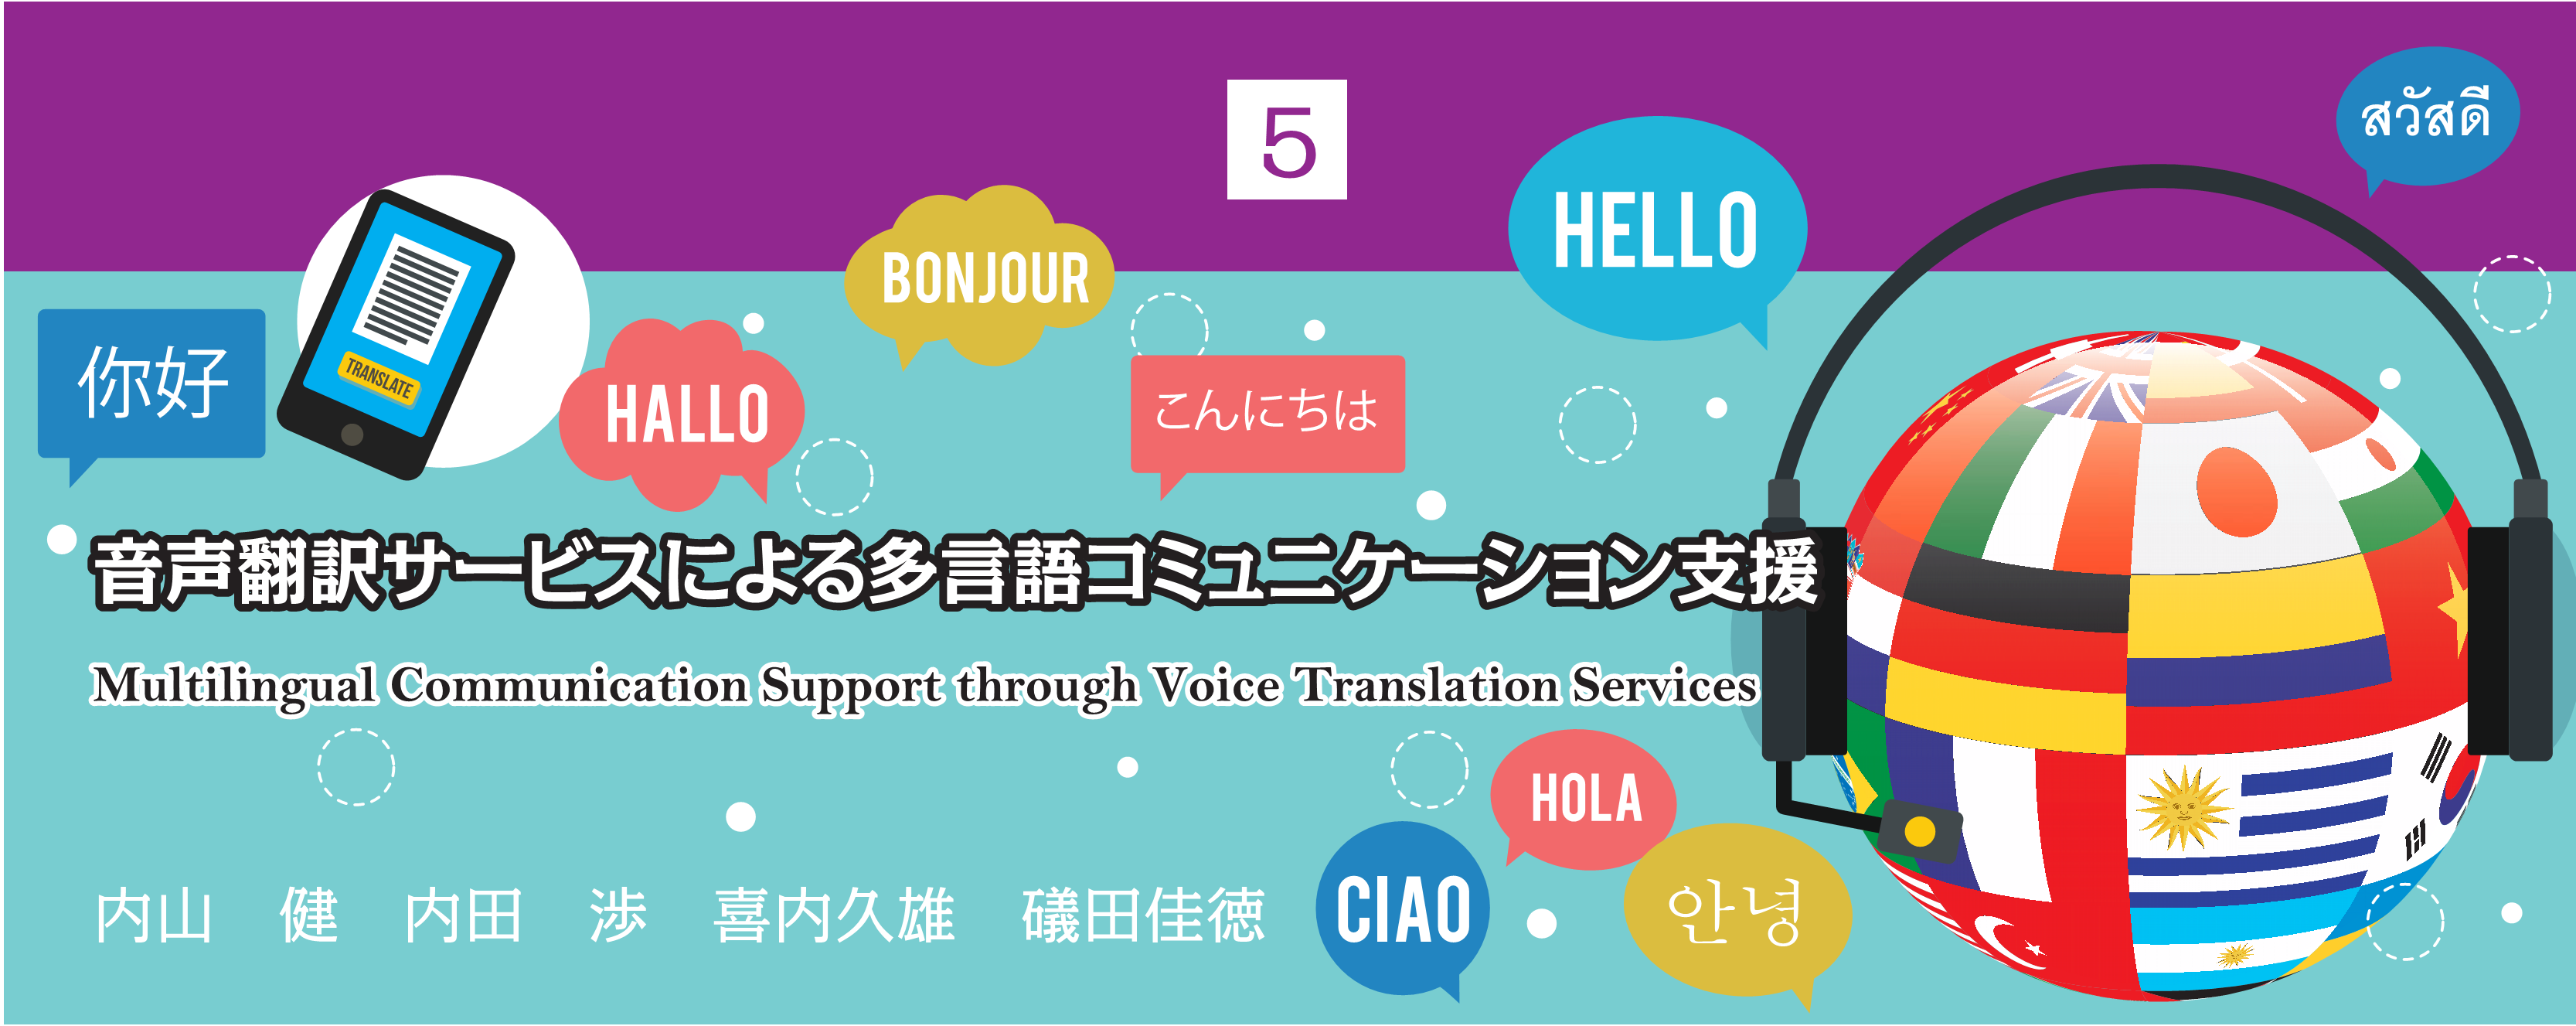 特別小特集 5. 音声翻訳サービスによる多言語コミュニケーション支援